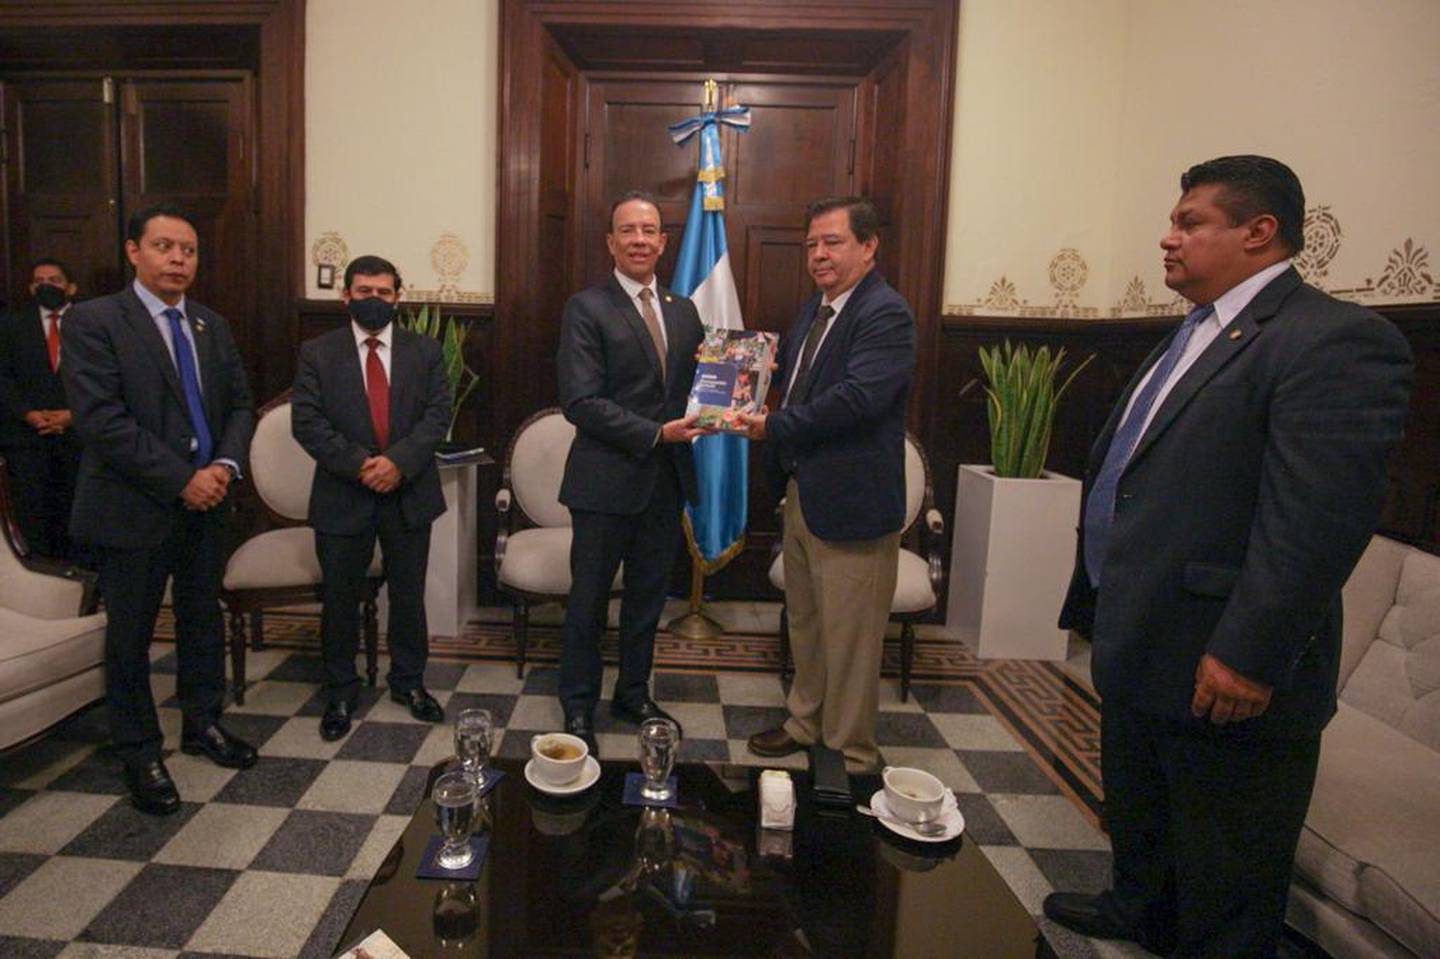 El presupuesto fue entregado por el ministro de Finanzas Álvaro González Ricci y recibido por el tercer vicepresidente de la Junta Directiva del Congreso, Efraín Menéndez.dfd